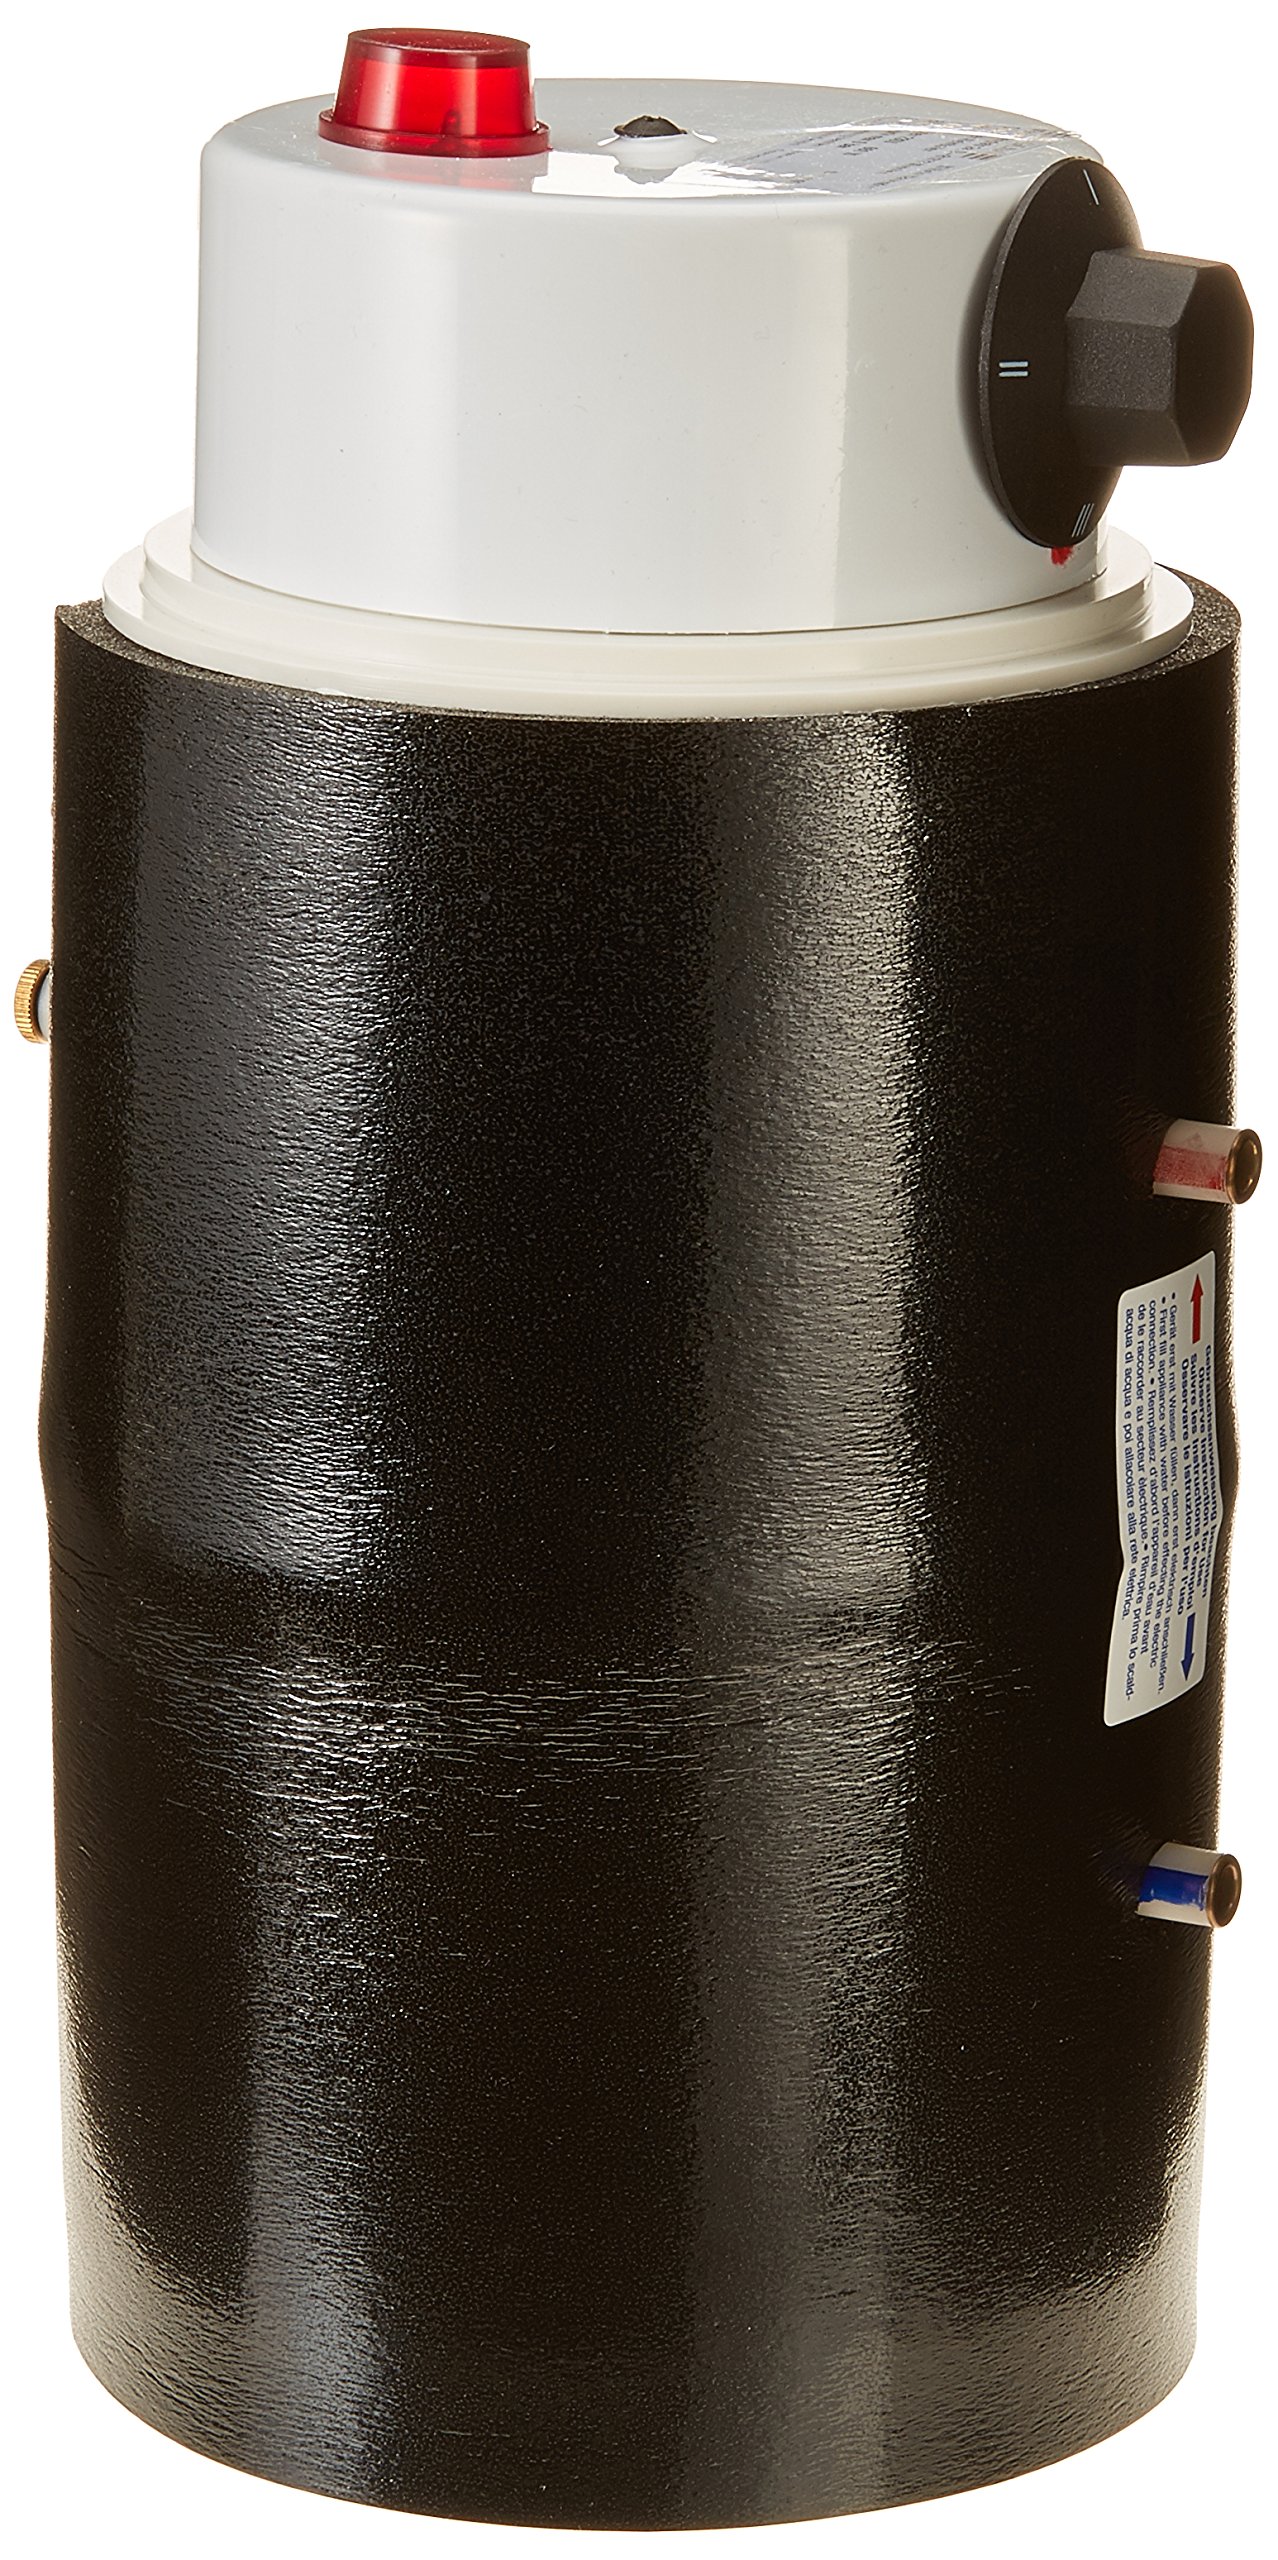 Elgena 26759 Boiler KB 3 – 230 V/660 W von Elgena